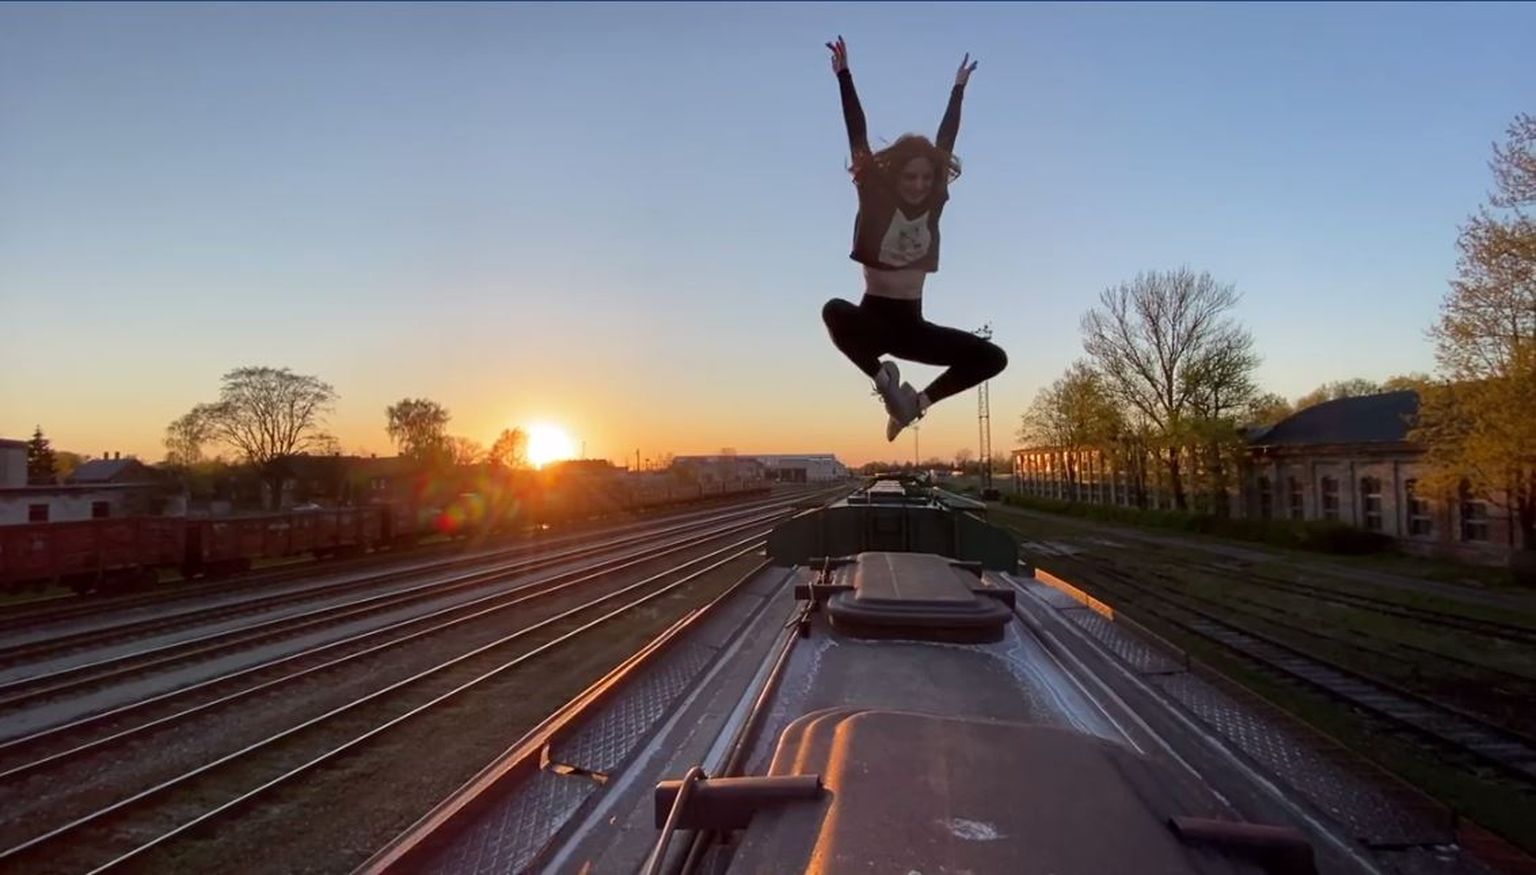 Üks stseene on videosse võetud raudteevaguni katusel.